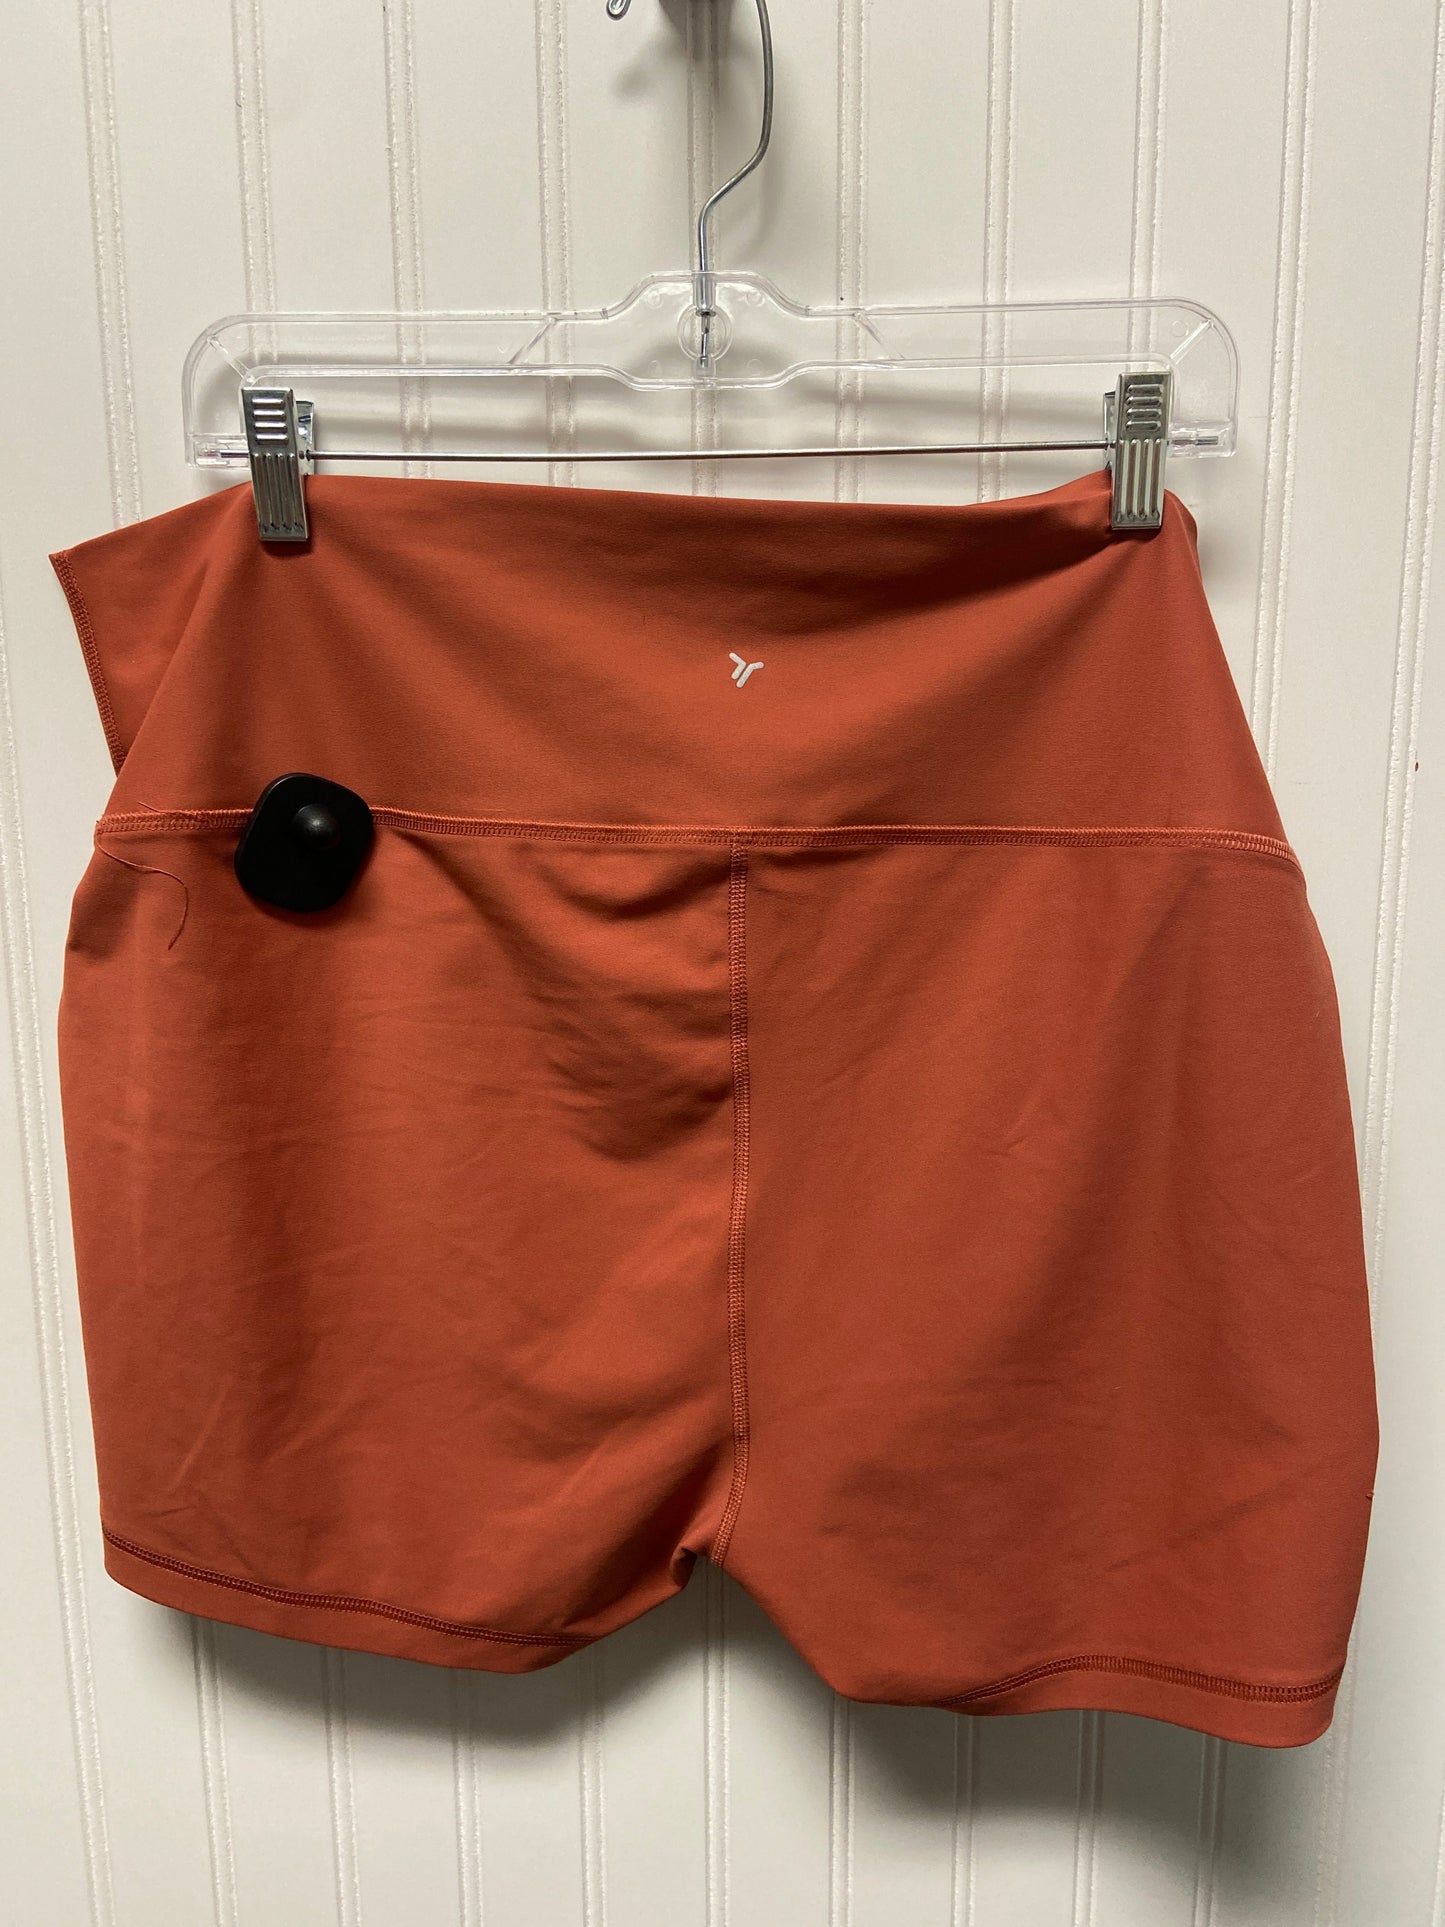 Orange Athletic Shorts Old Navy, Size 1x